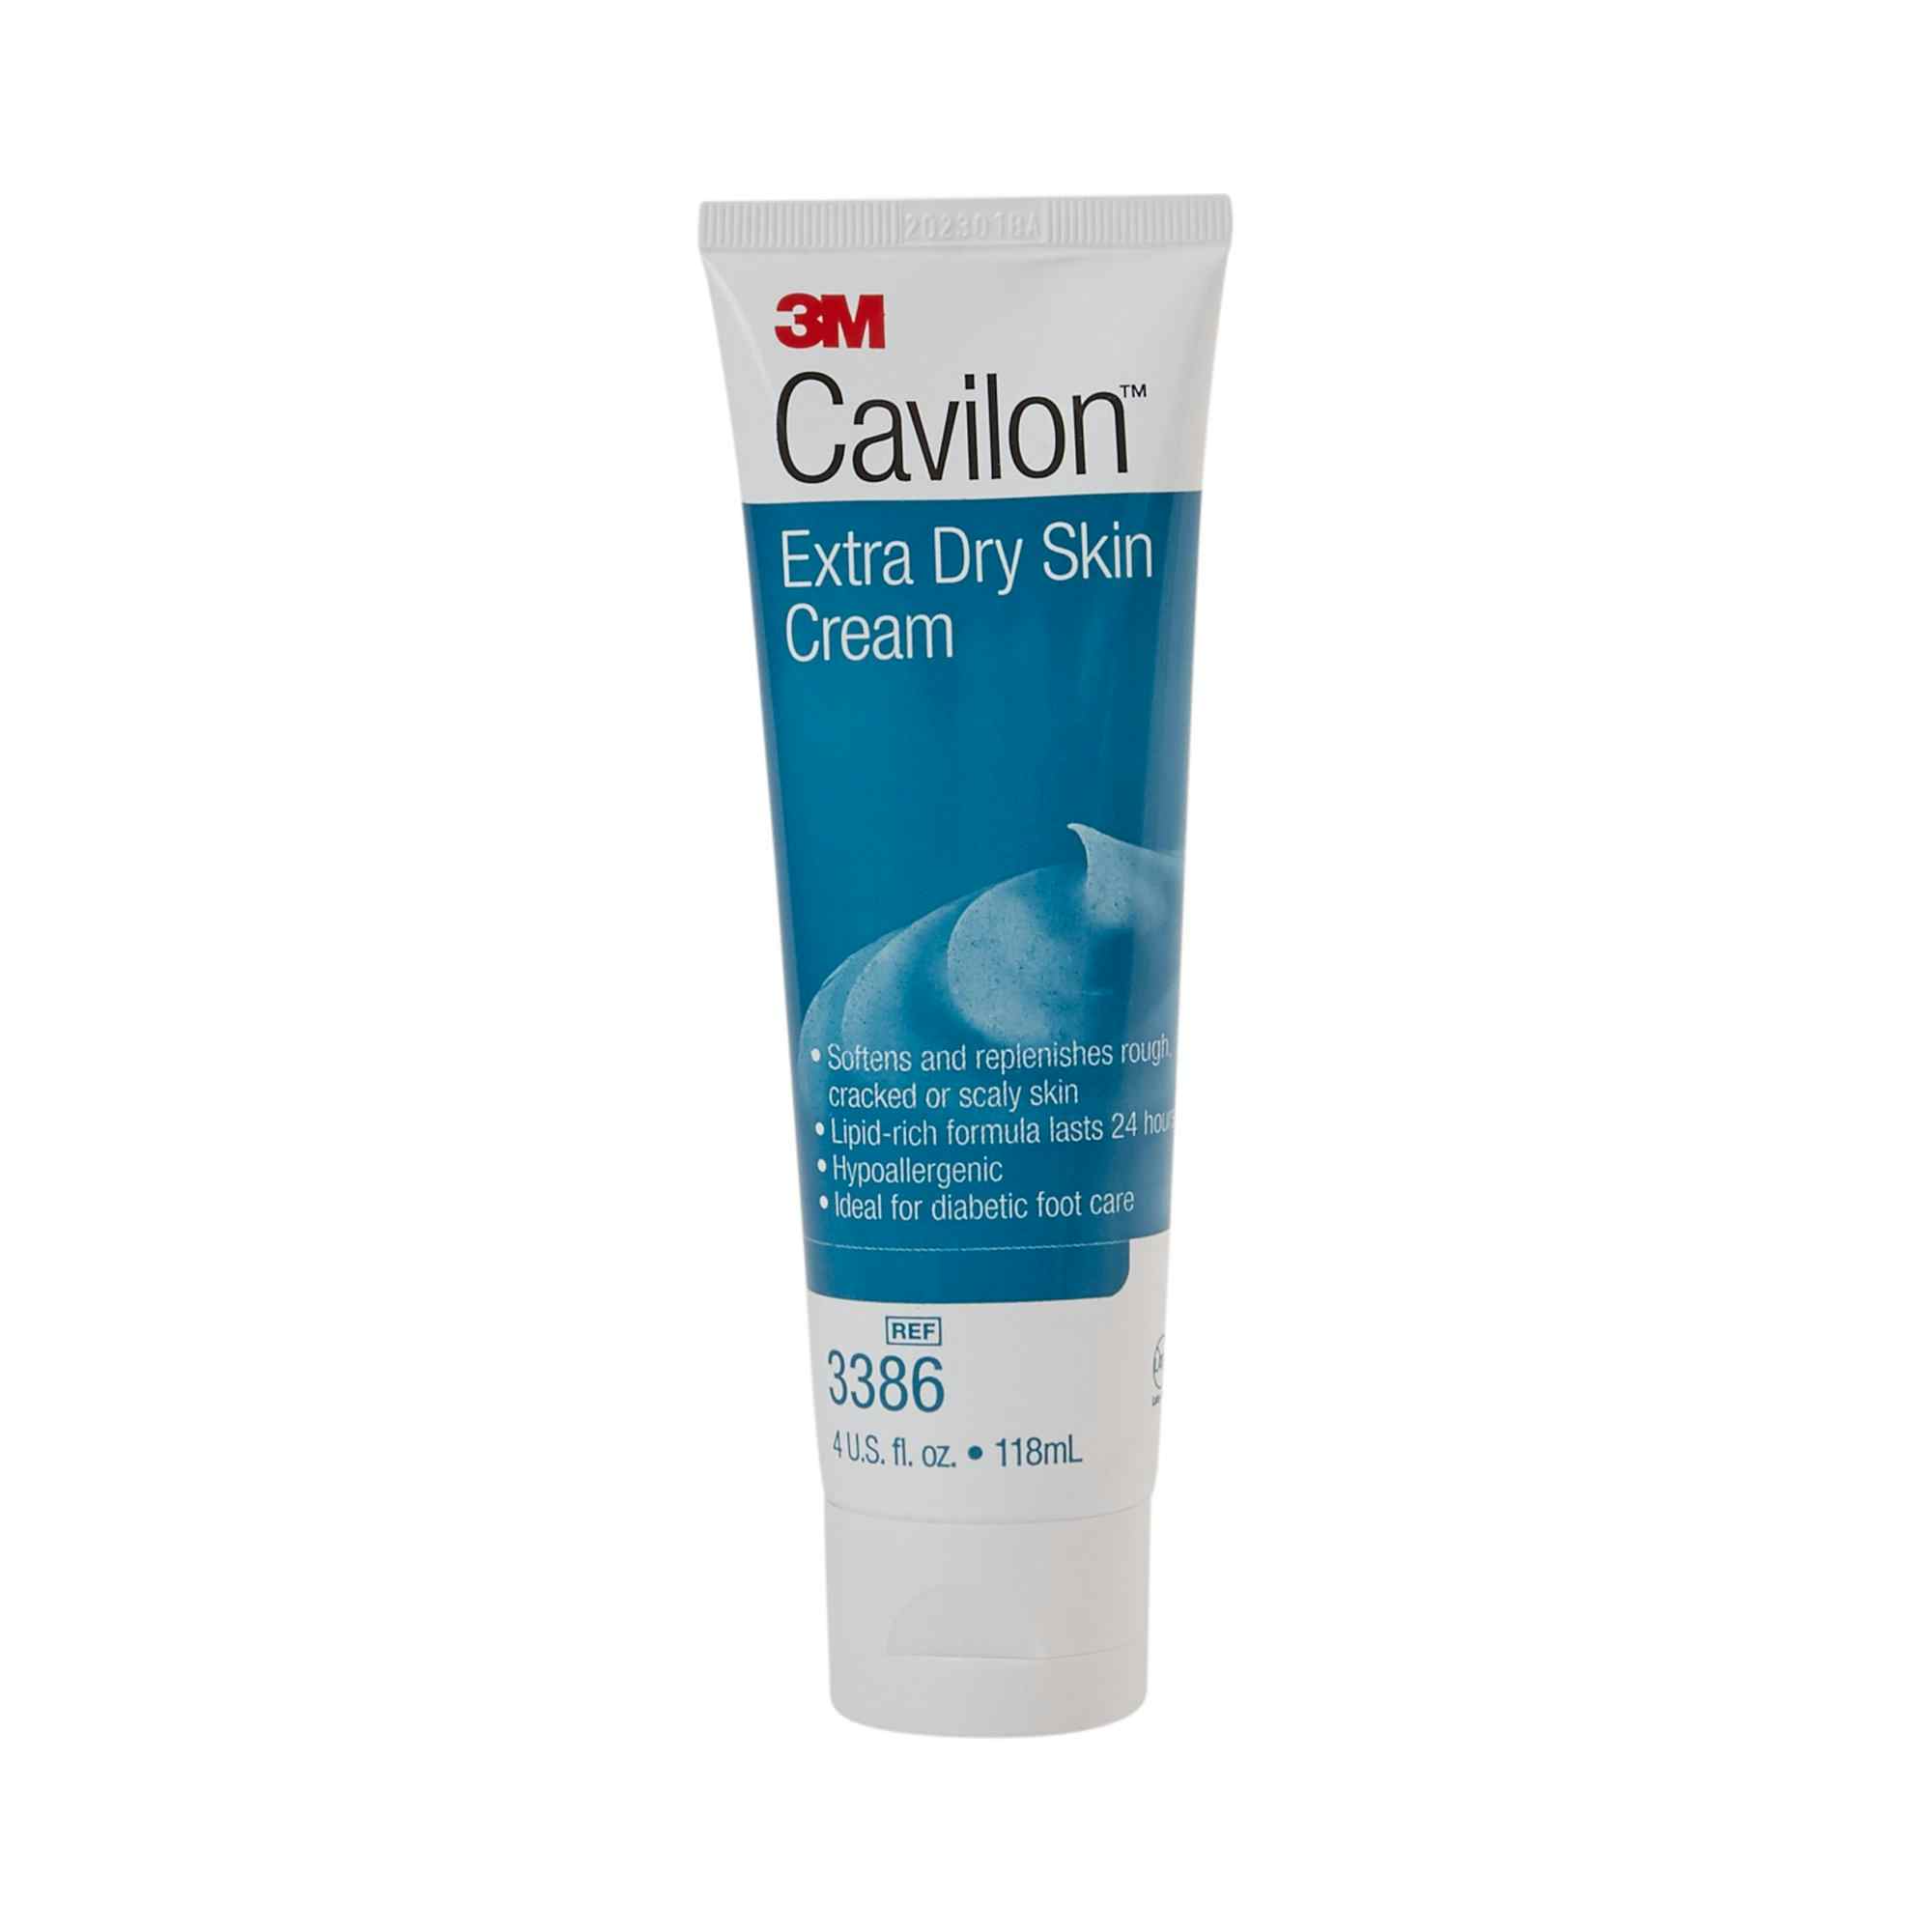 3M Cavilon Extra Dry Skin Cream, 4 oz., 3386, 1 Each